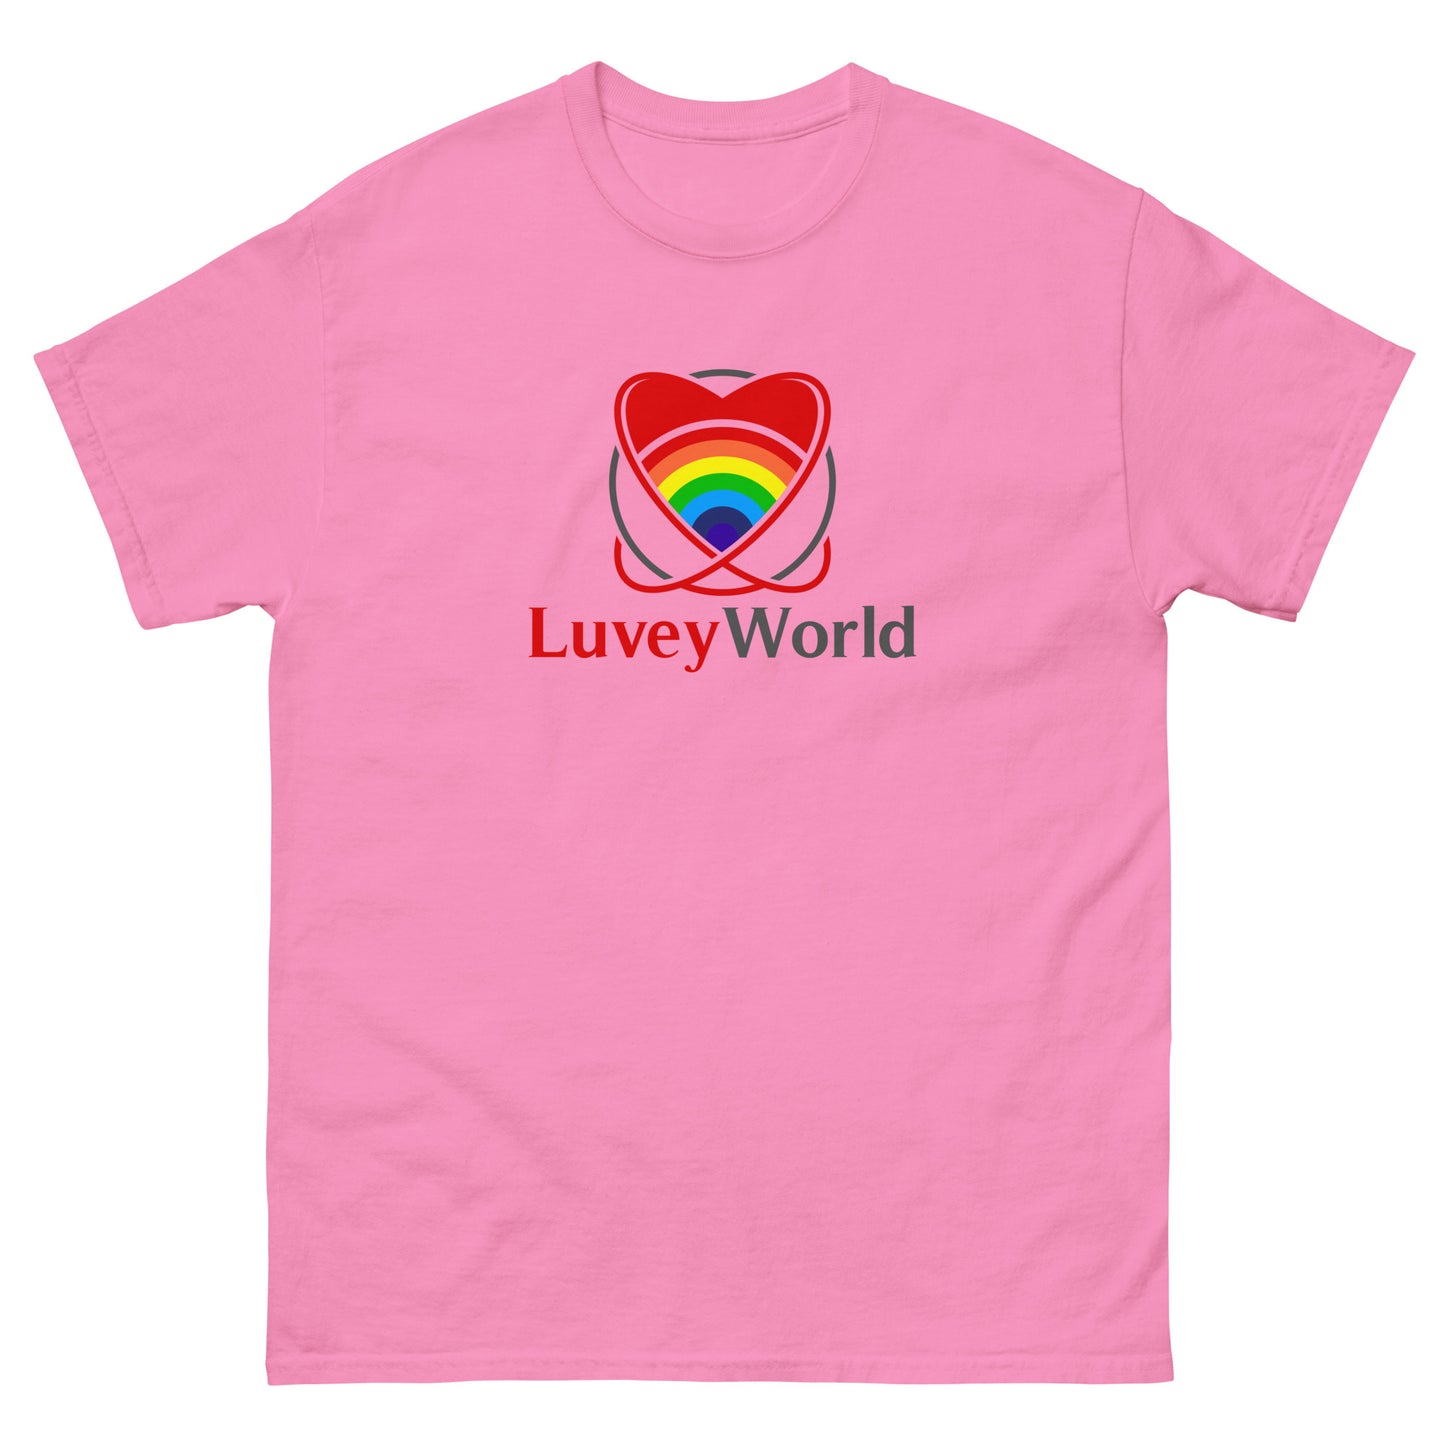 LuveyWorld klassisk t-shirt